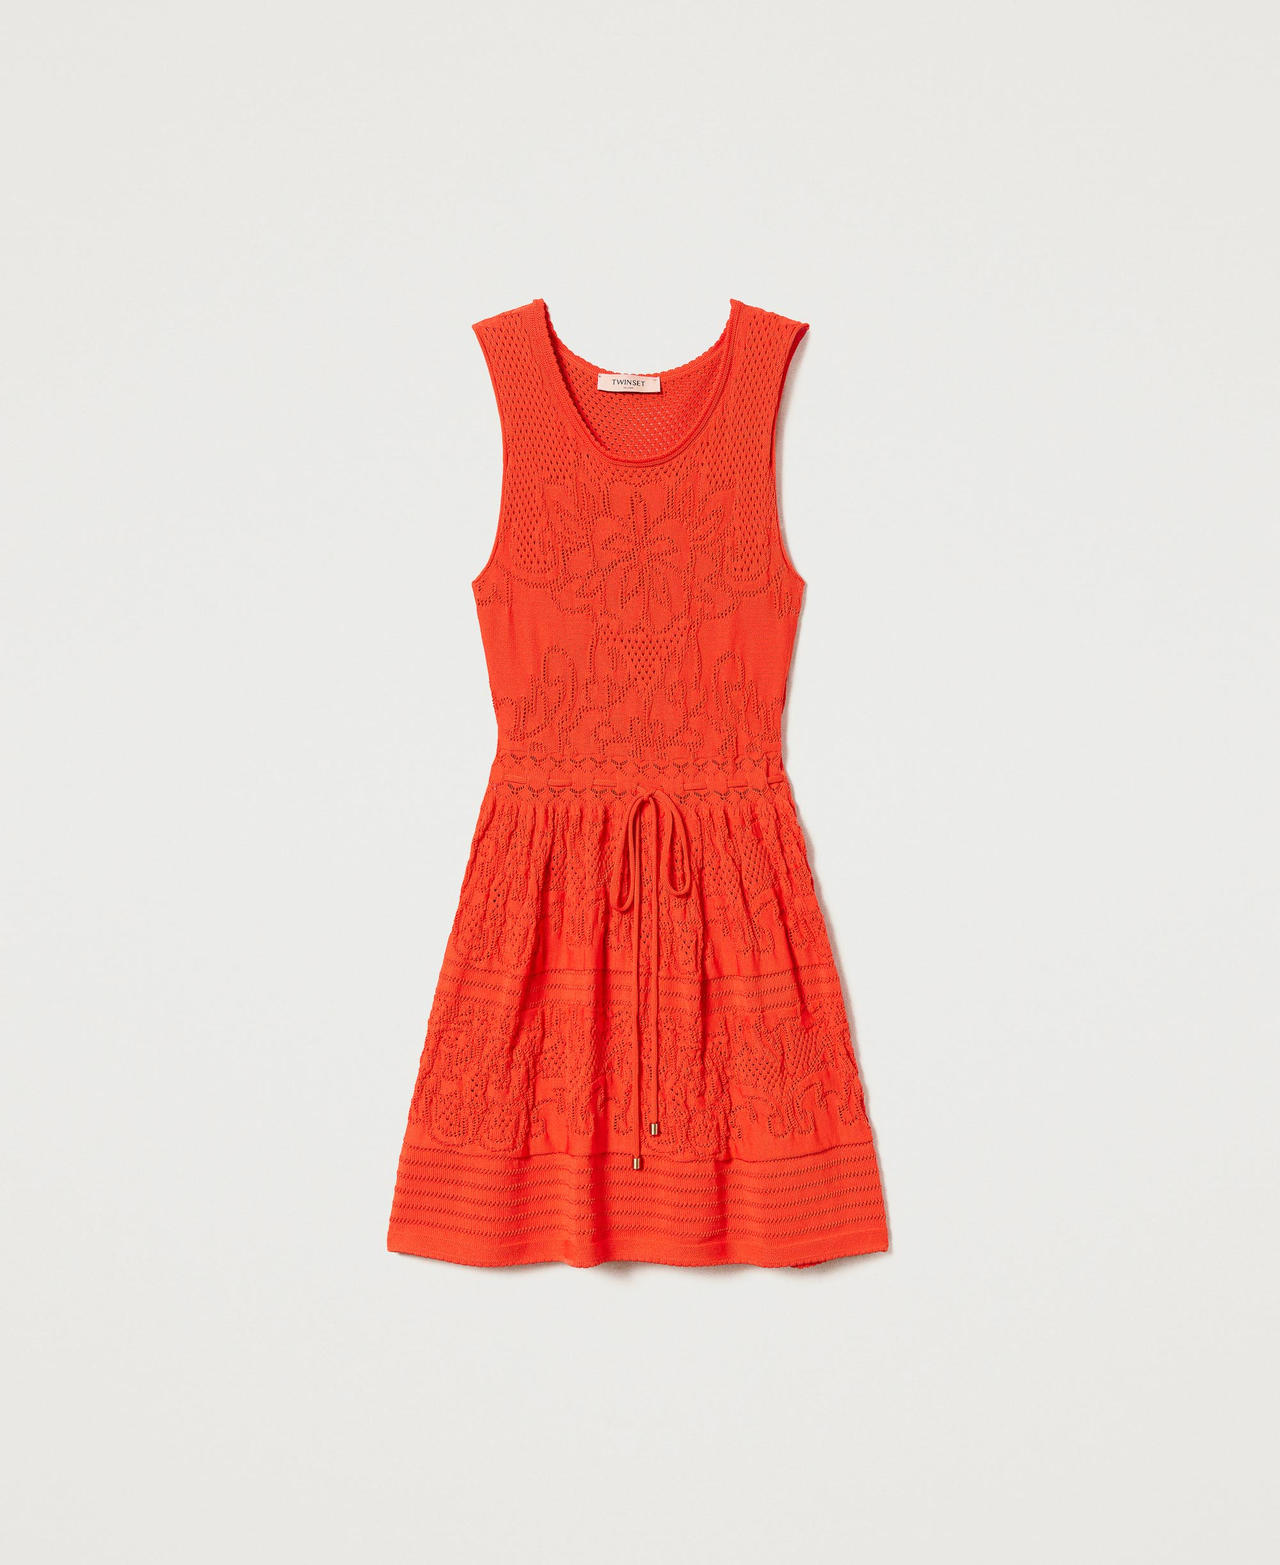 Robe courte en maille avec godet Orange « Orange Sun » Femme 231TT3140-0S